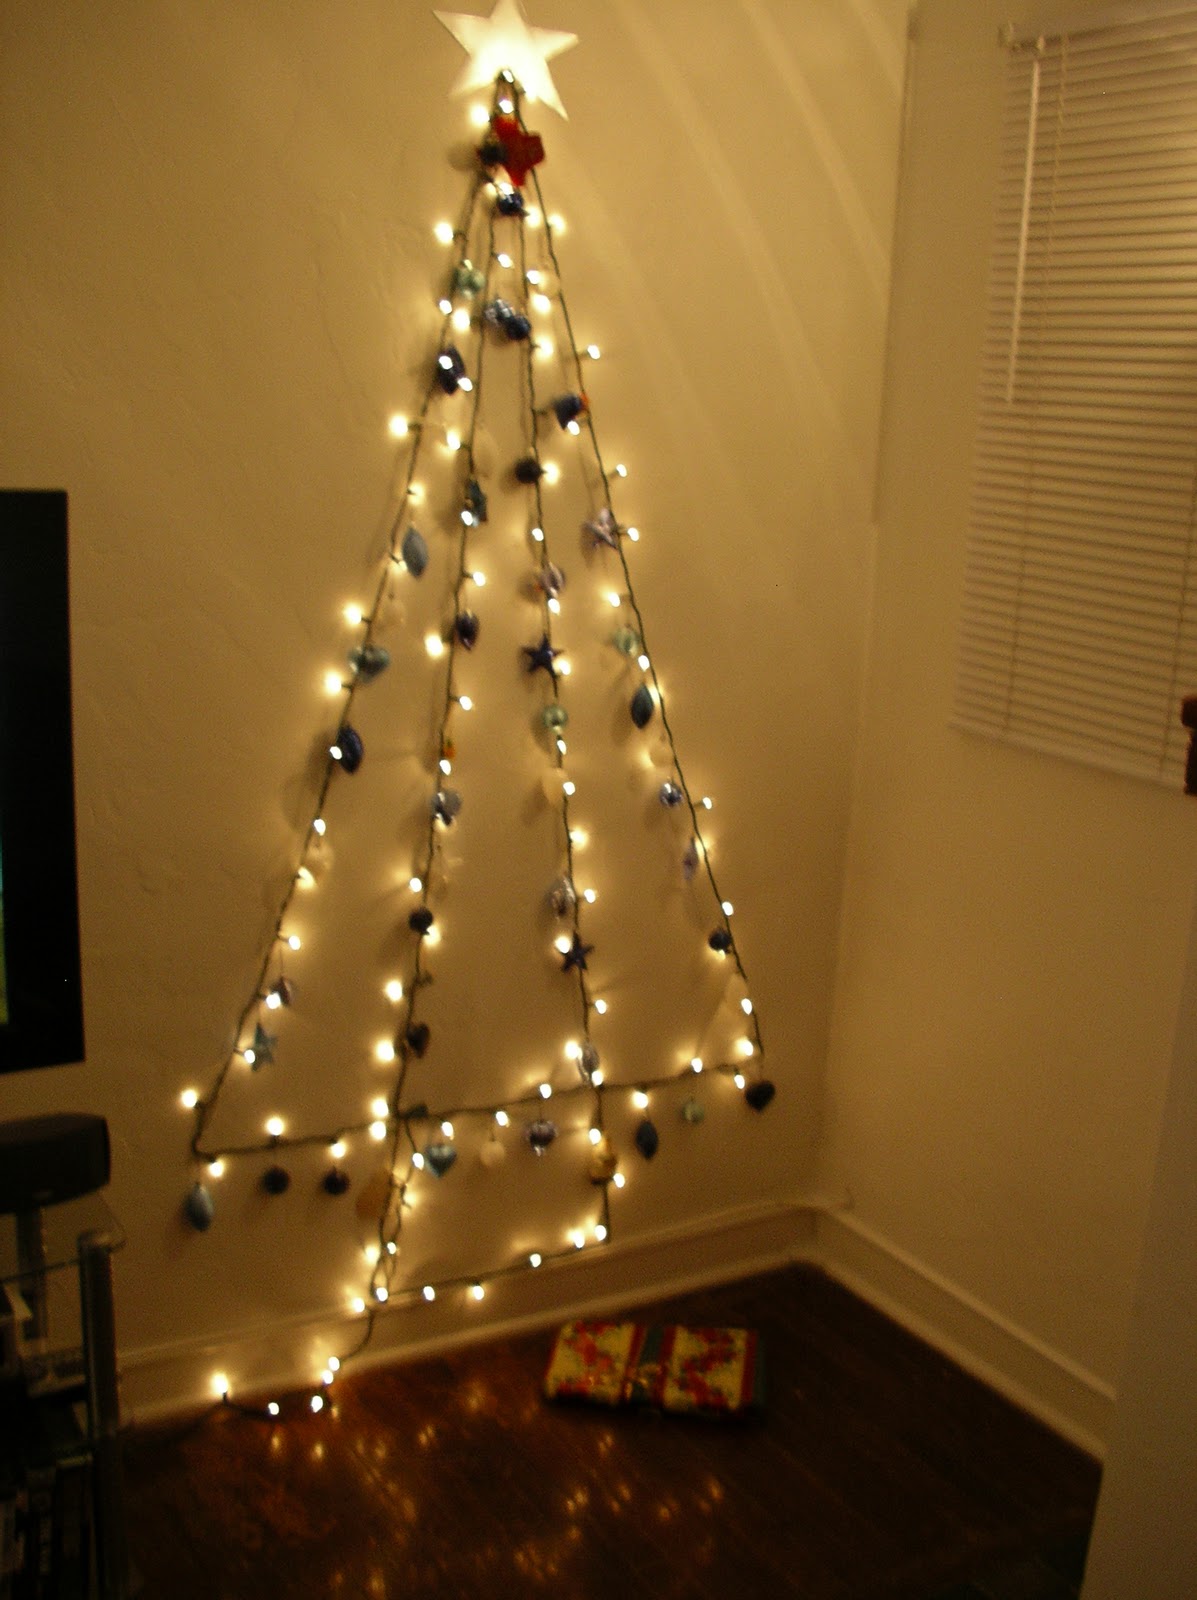 Wall tree lights - Adding Decor and Lighting to Your Home | Warisan Lighting